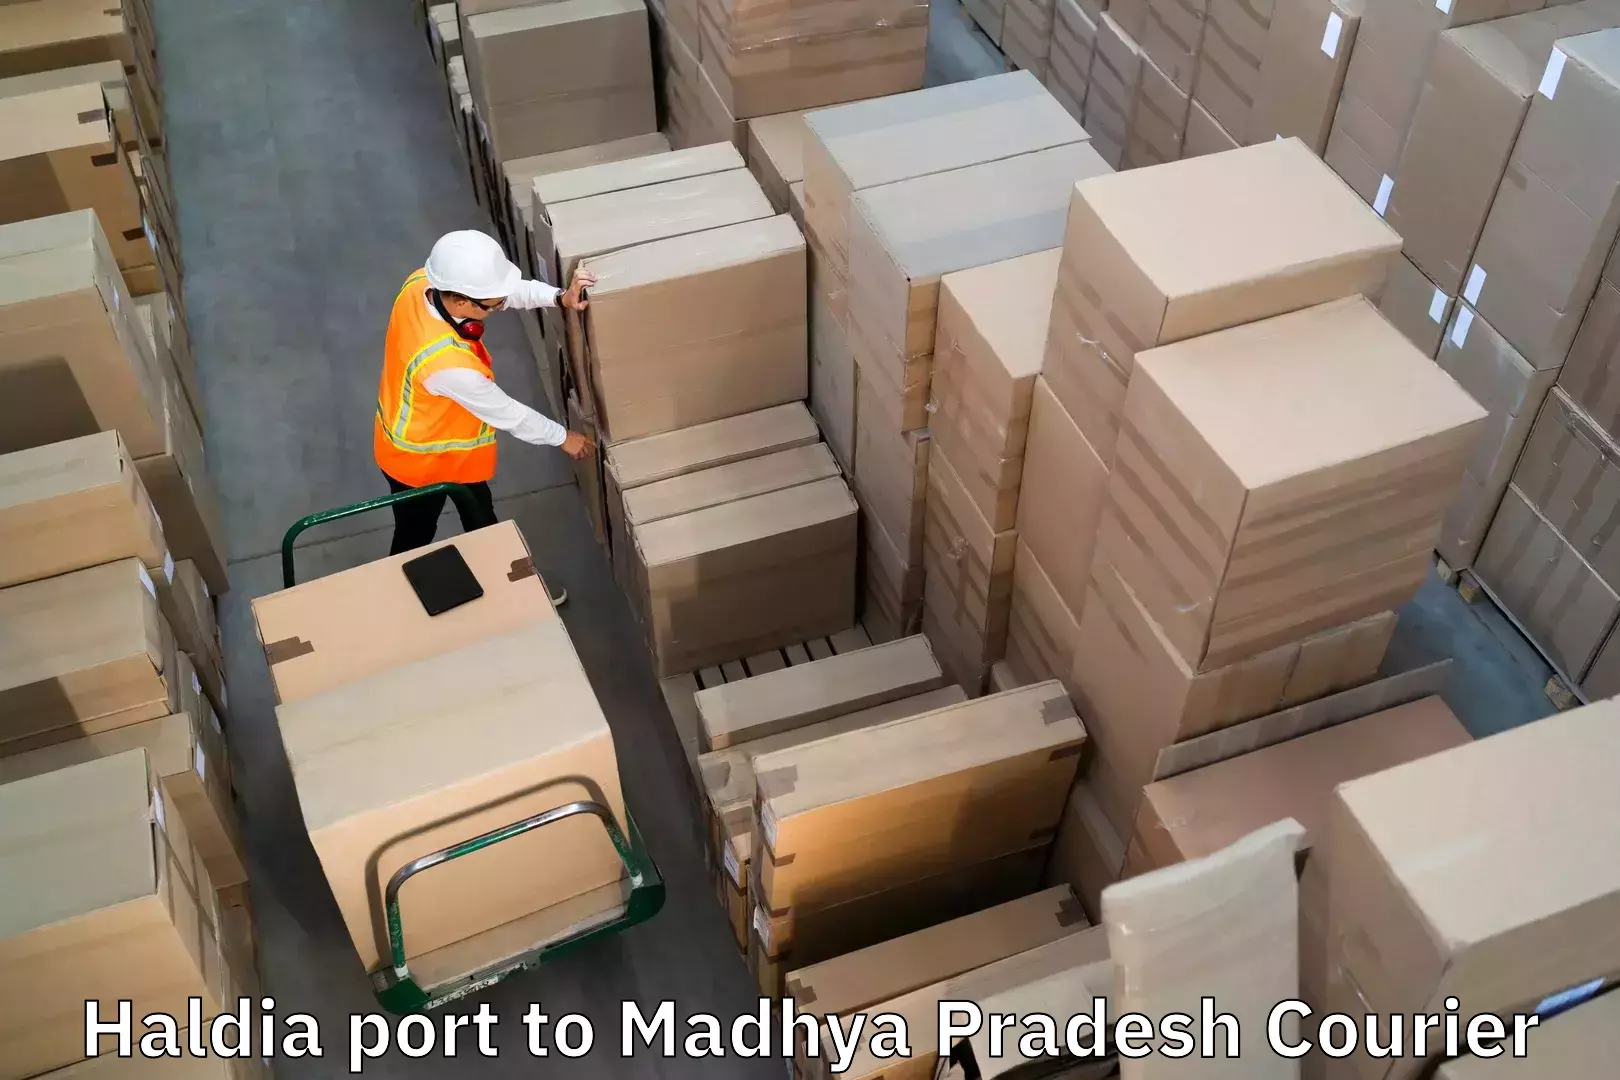 Nationwide luggage courier Haldia port to Budaganj